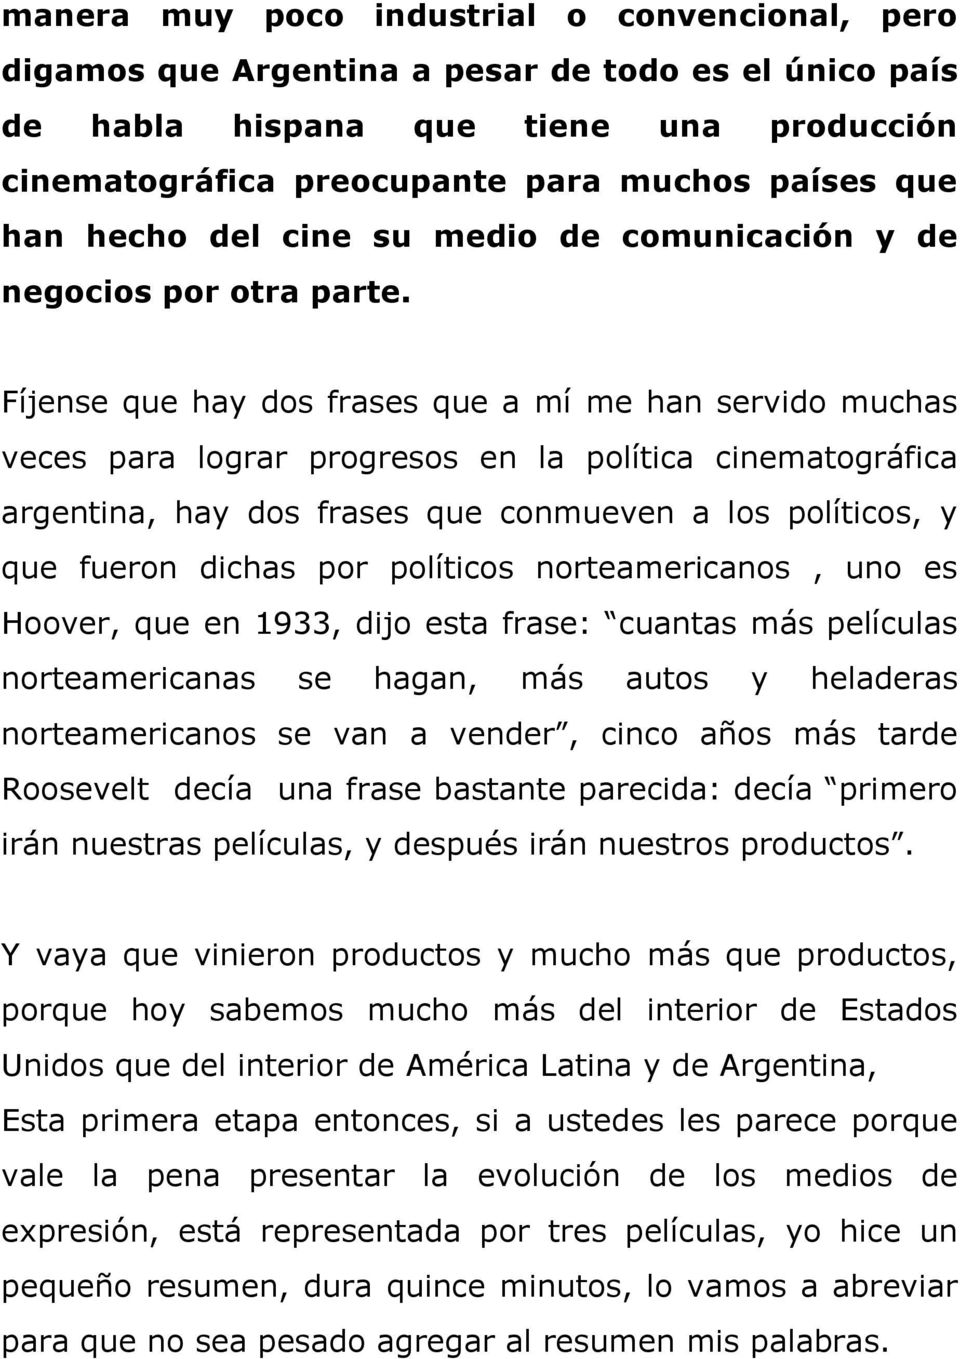 Fíjense que hay dos frases que a mí me han servido muchas veces para lograr progresos en la política cinematográfica argentina, hay dos frases que conmueven a los políticos, y que fueron dichas por